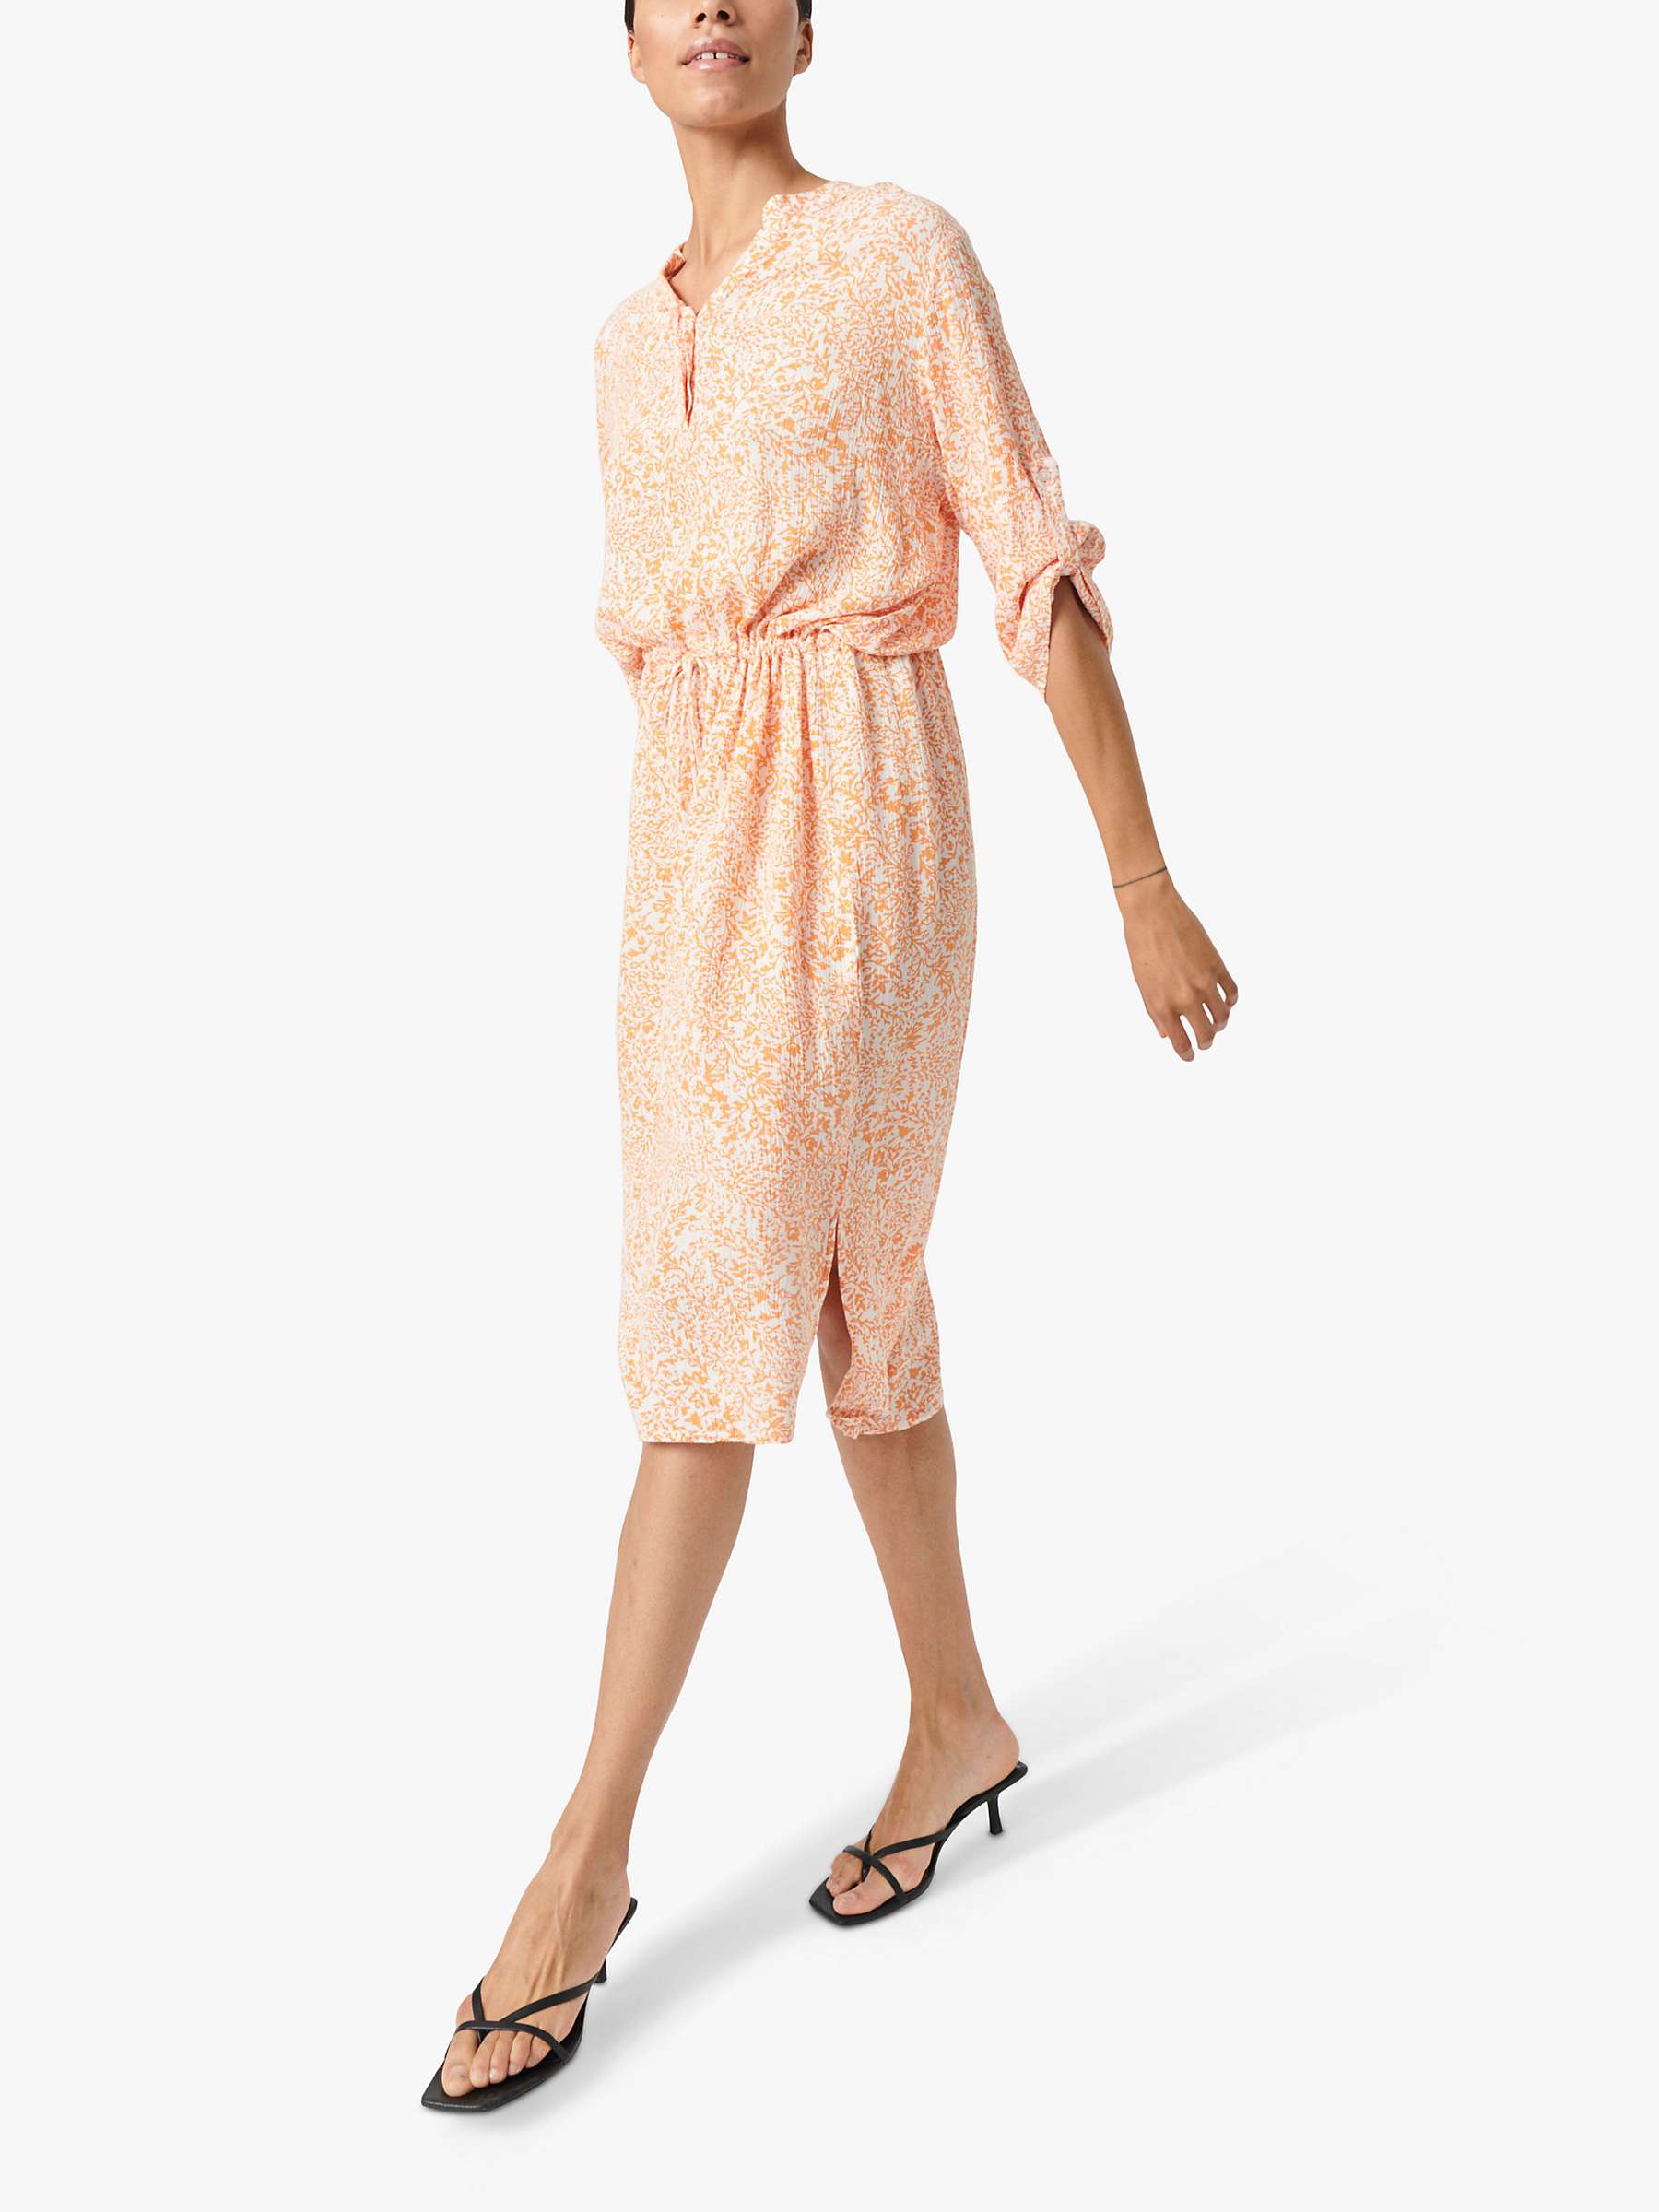 Buy Soaked In Luxury Zaya Knee Length Half Sleeve Dress, Tangerine Ditsy Online at johnlewis.com